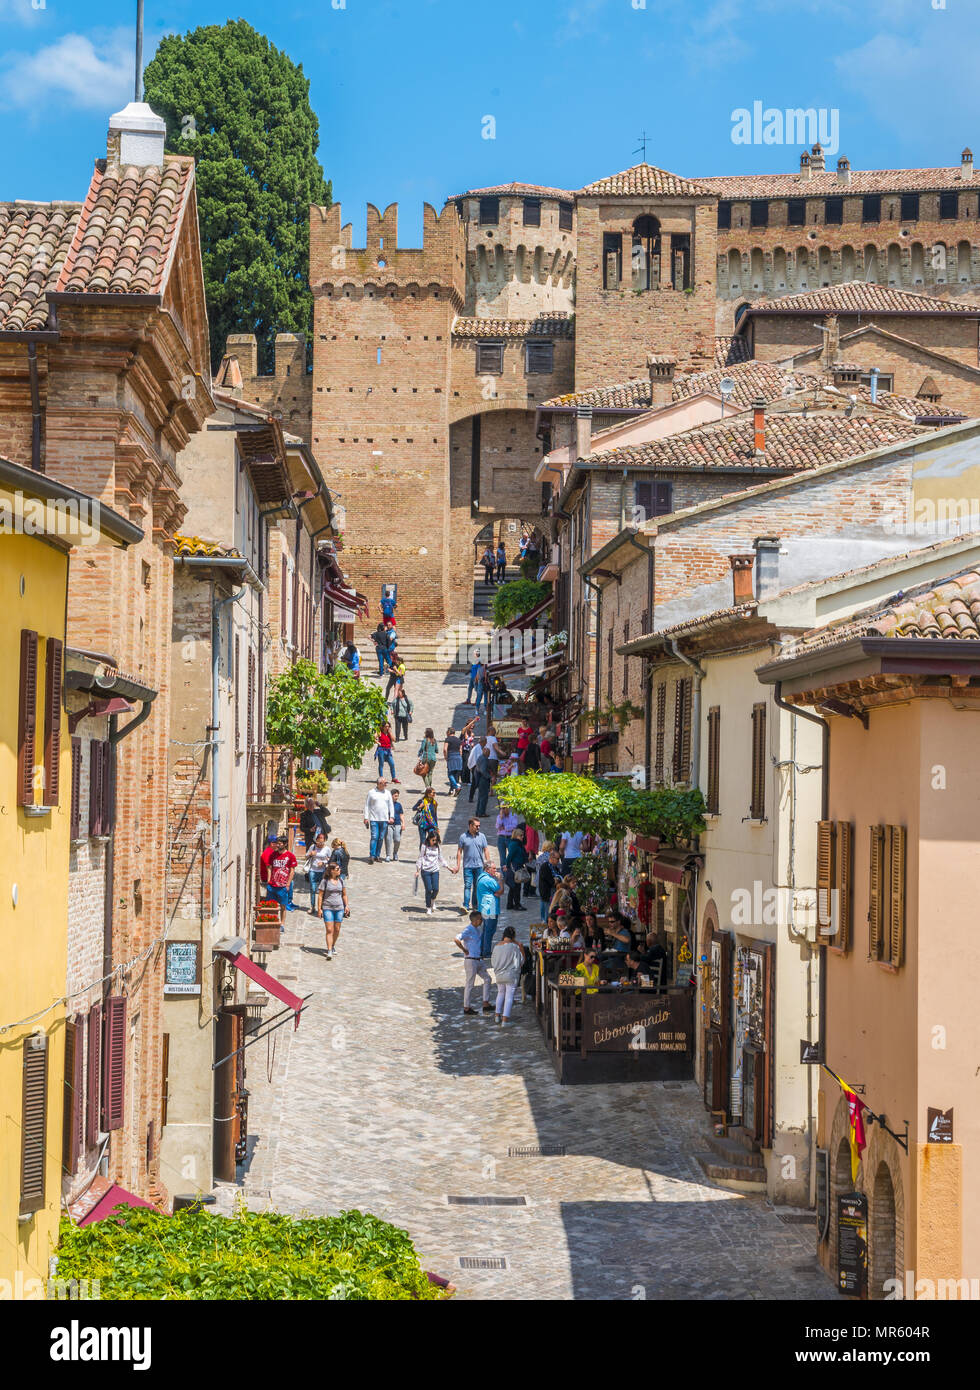 Gradara, petite ville dans la province de Pesaro Urbino, dans la région des Marches de l'Italie. Banque D'Images